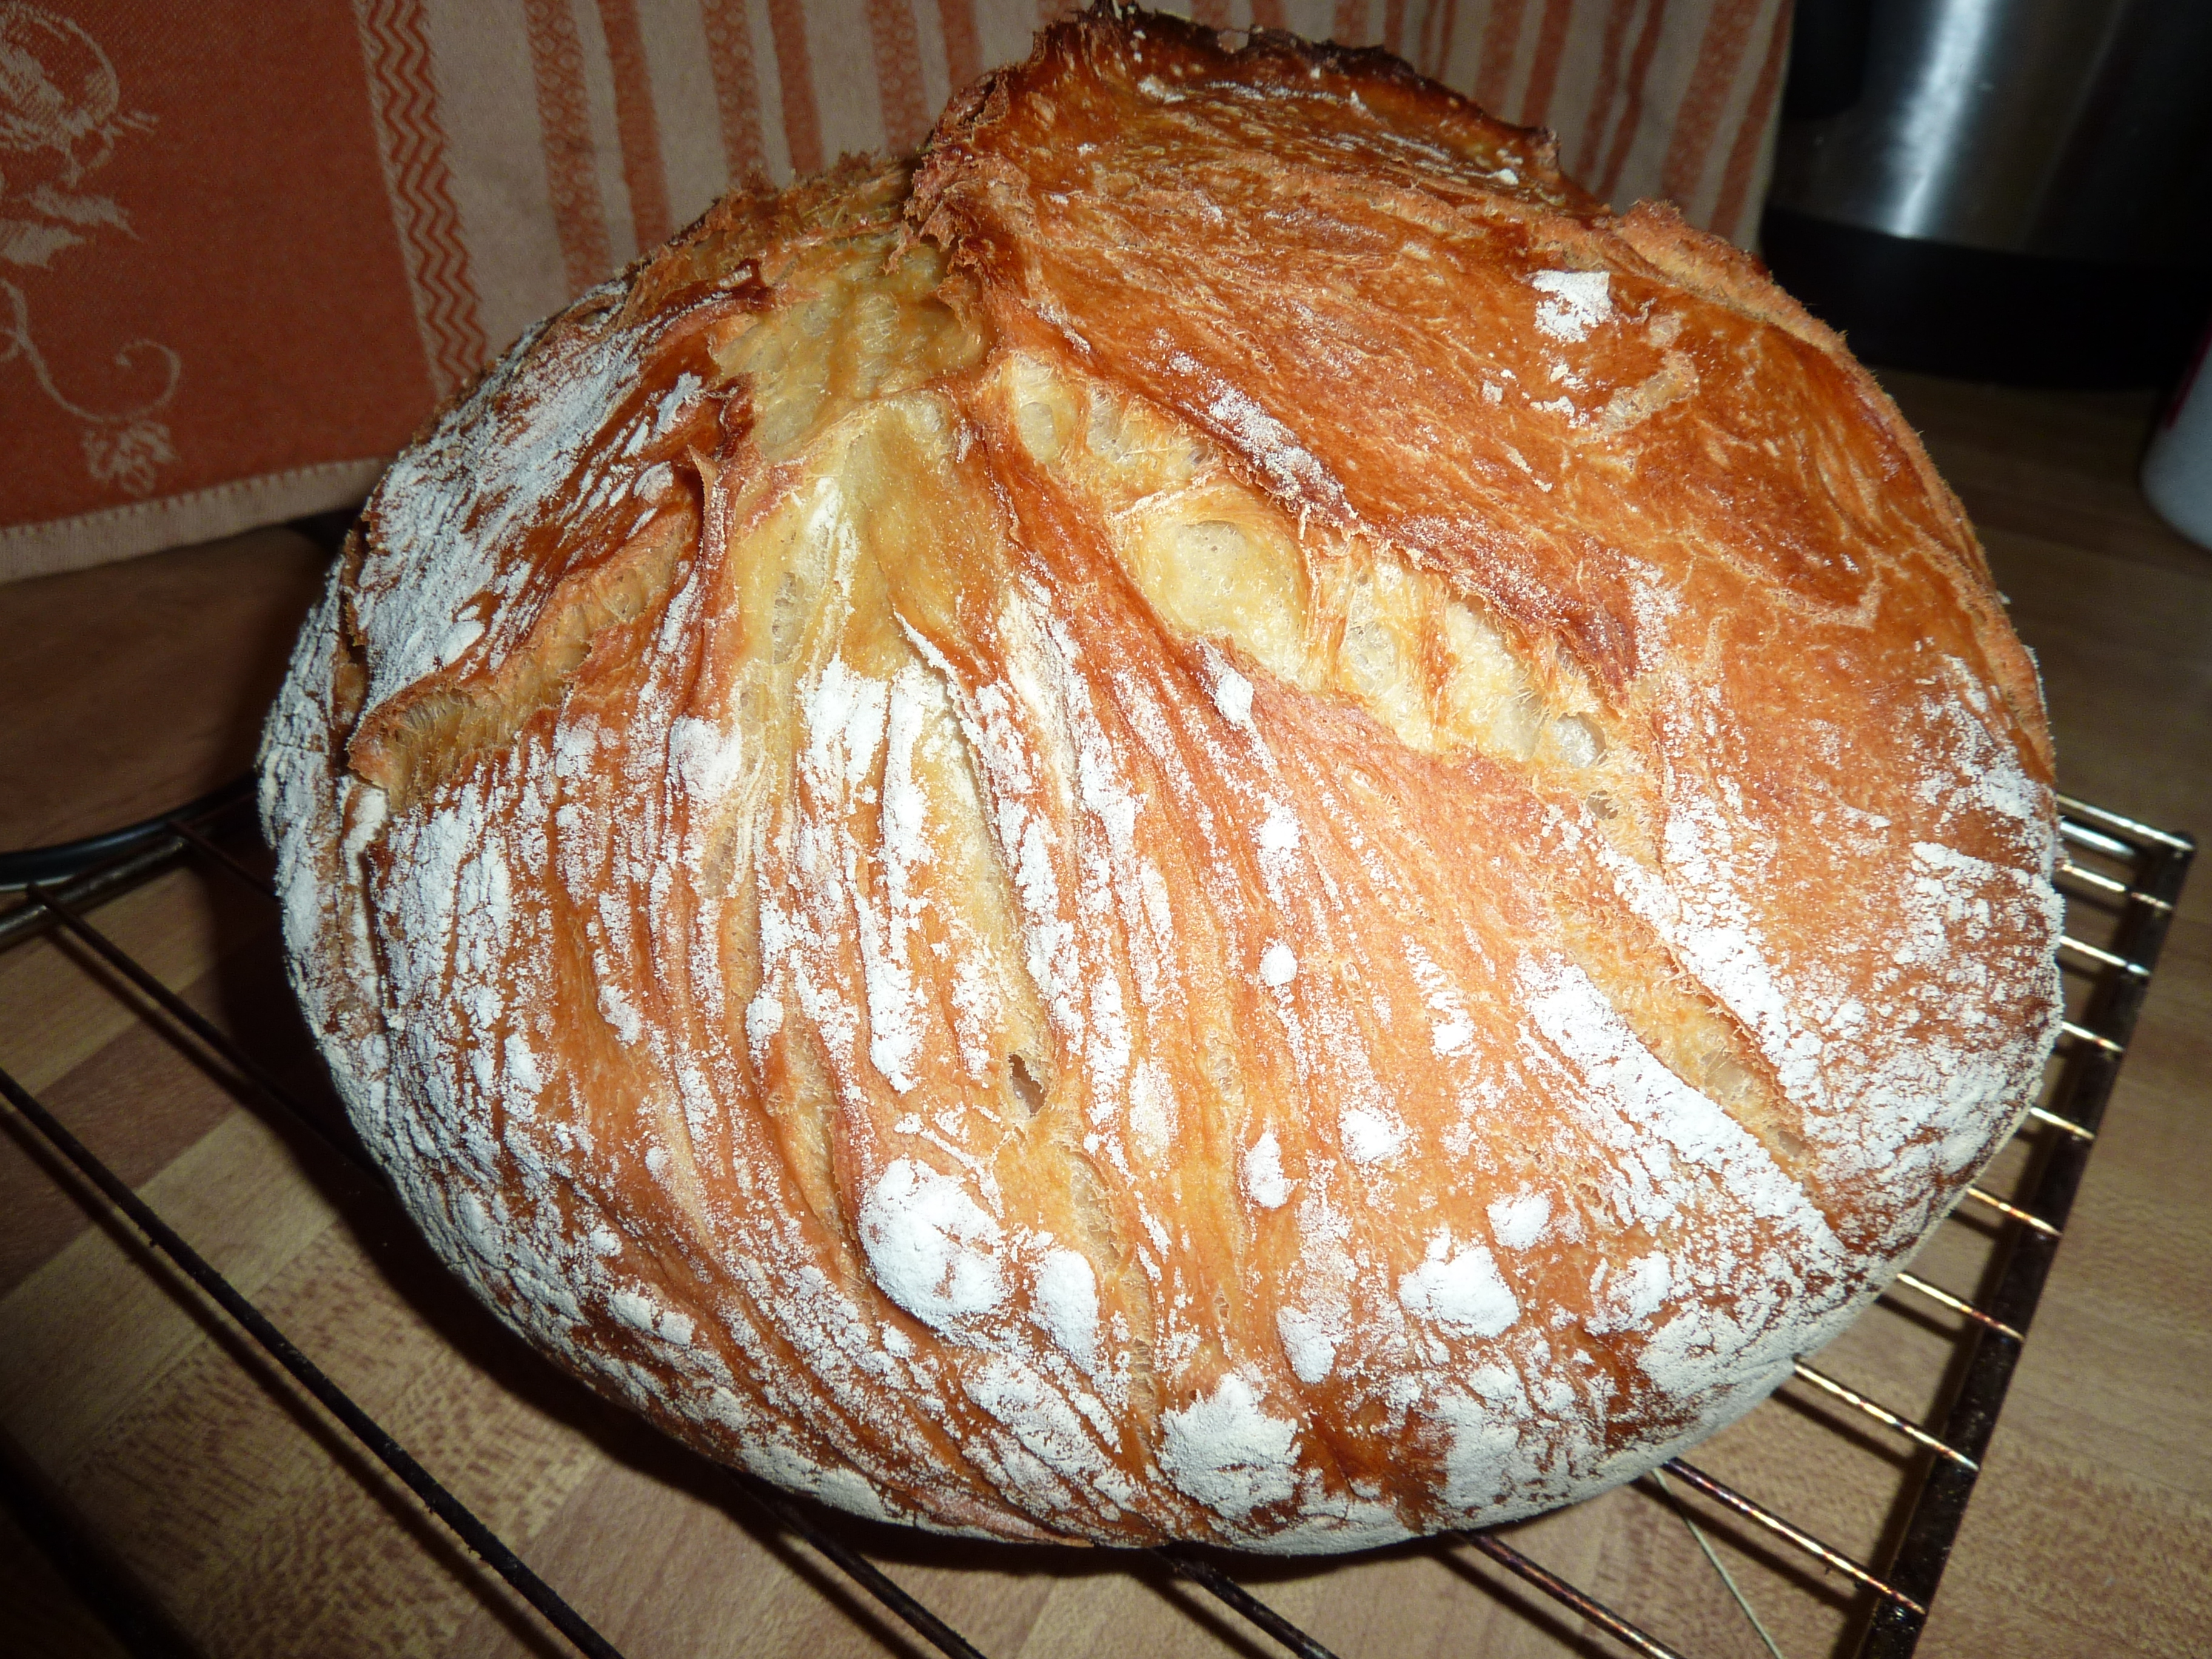 Хлеб дрожжевой в домашних условиях в духовке